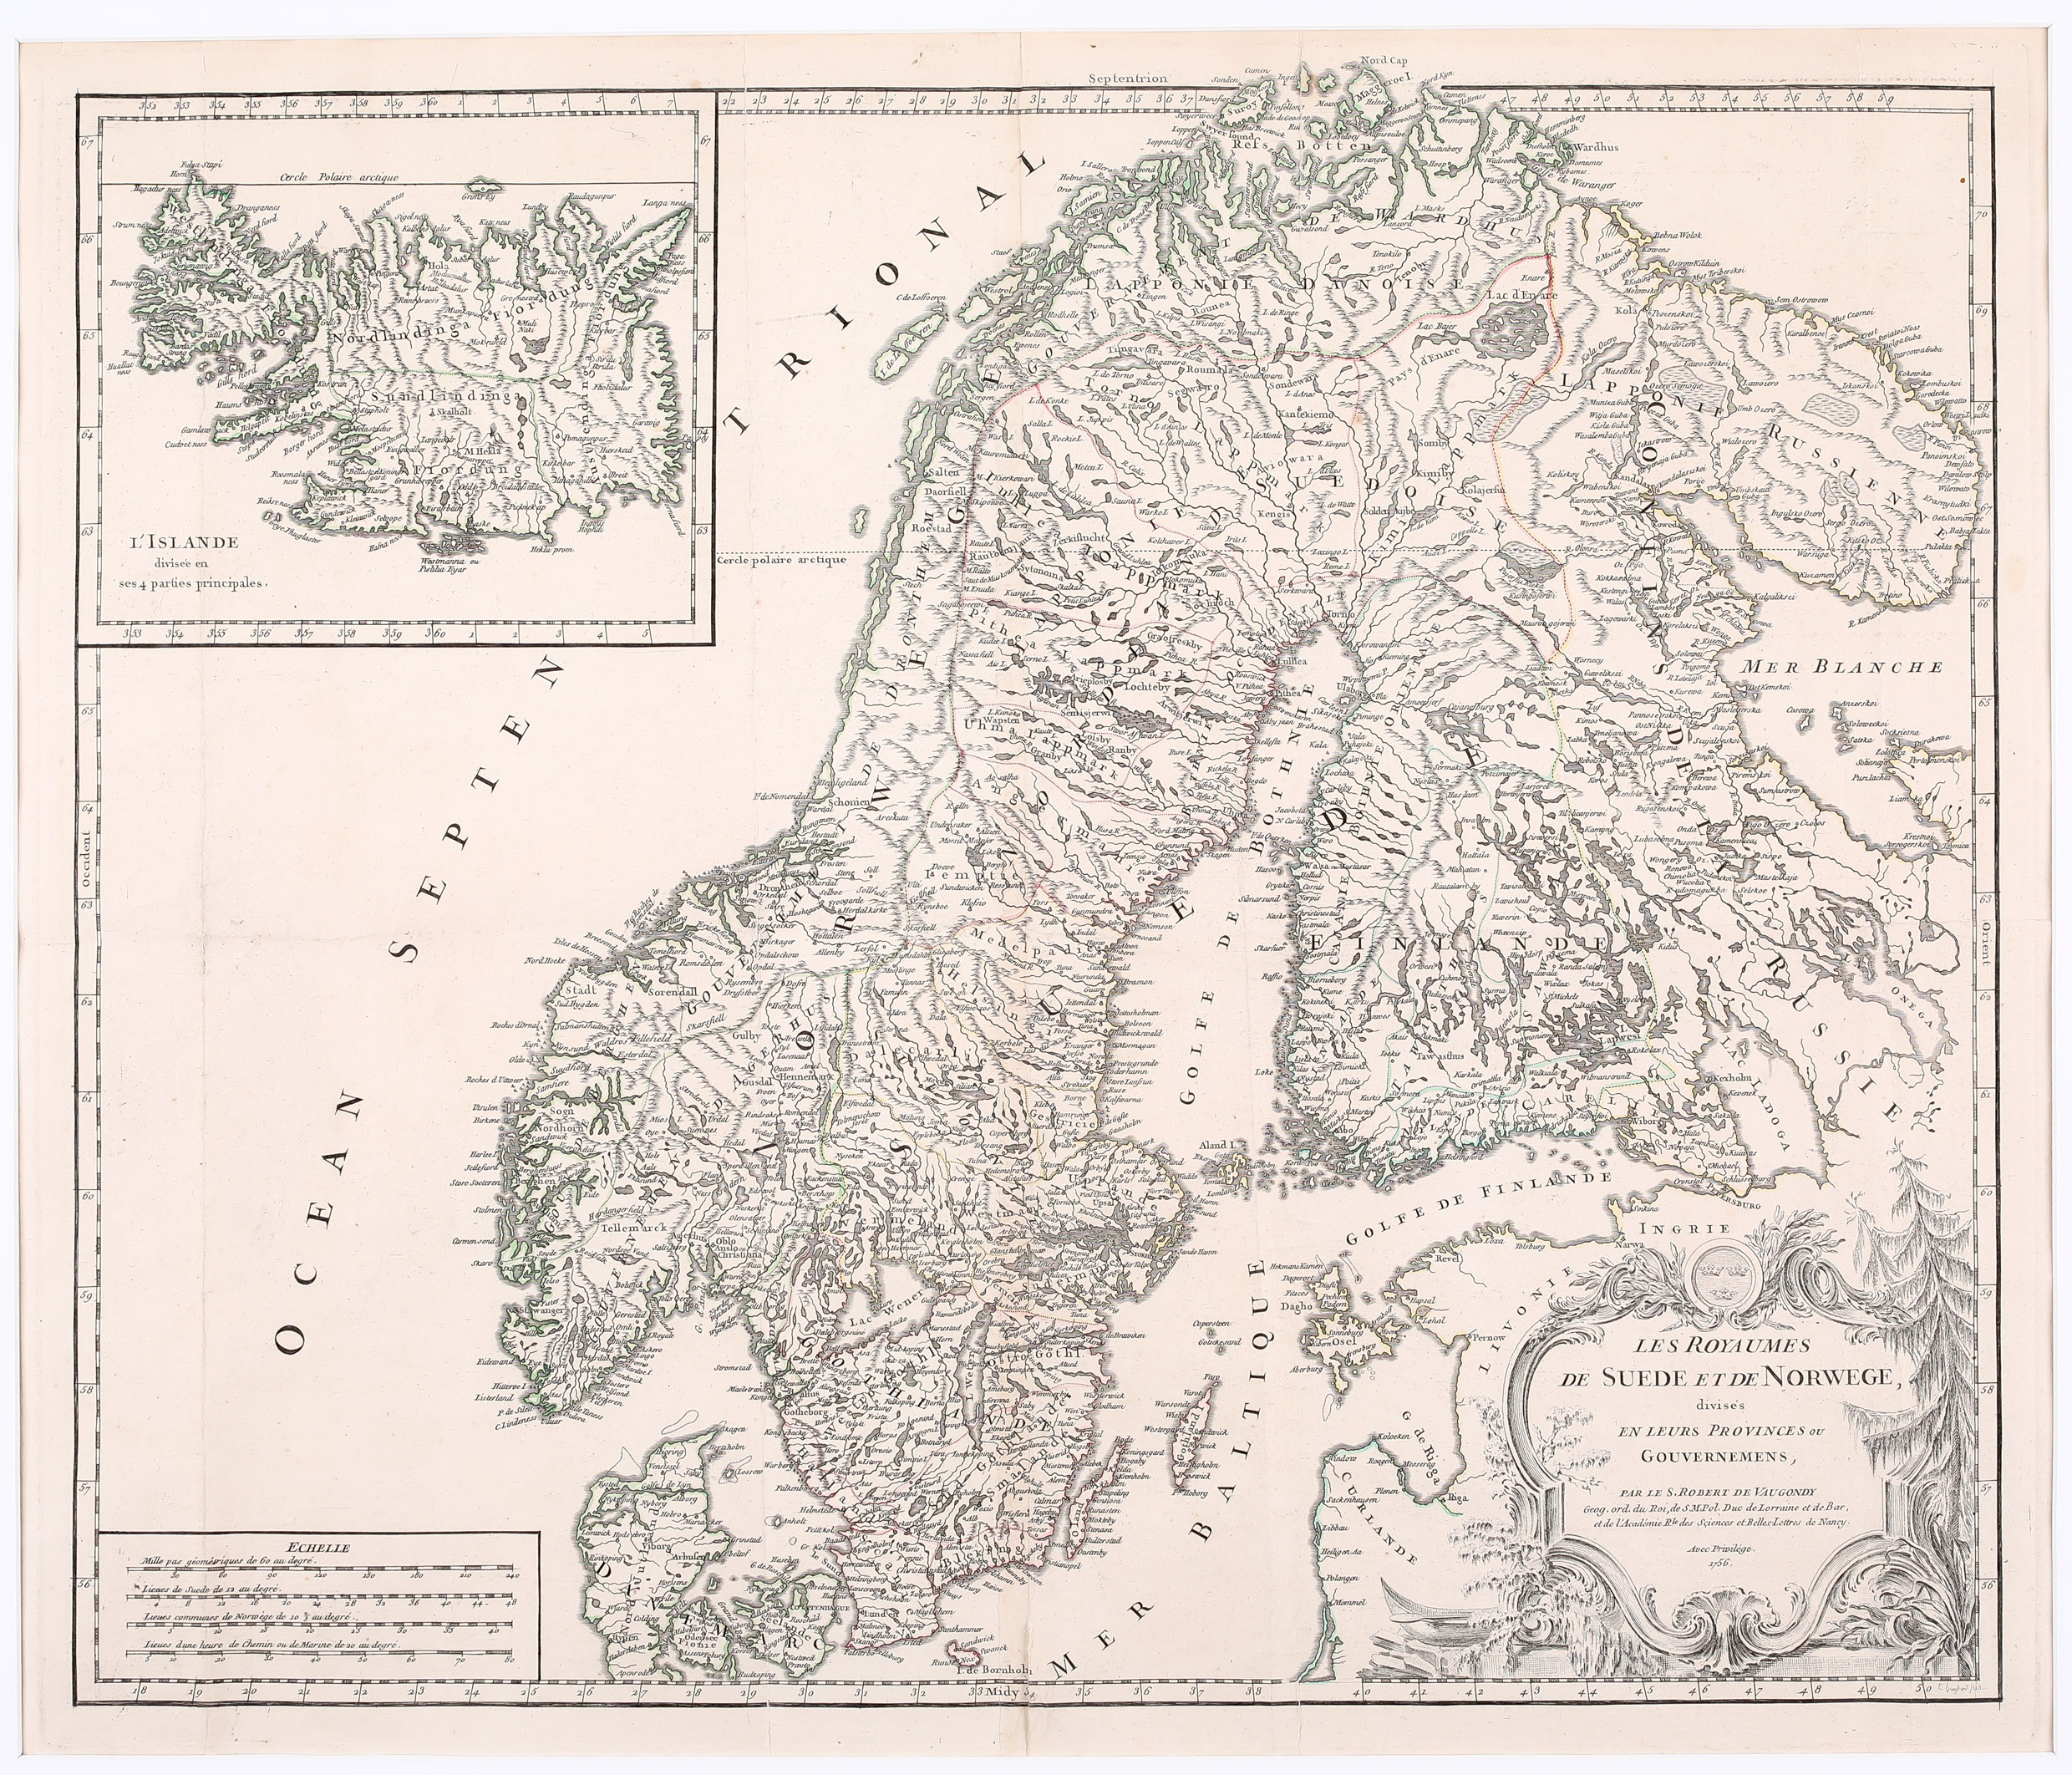 89. Les Royaumes de Suede et de Norwege divises en leurs Provinces ou Gouvernemens